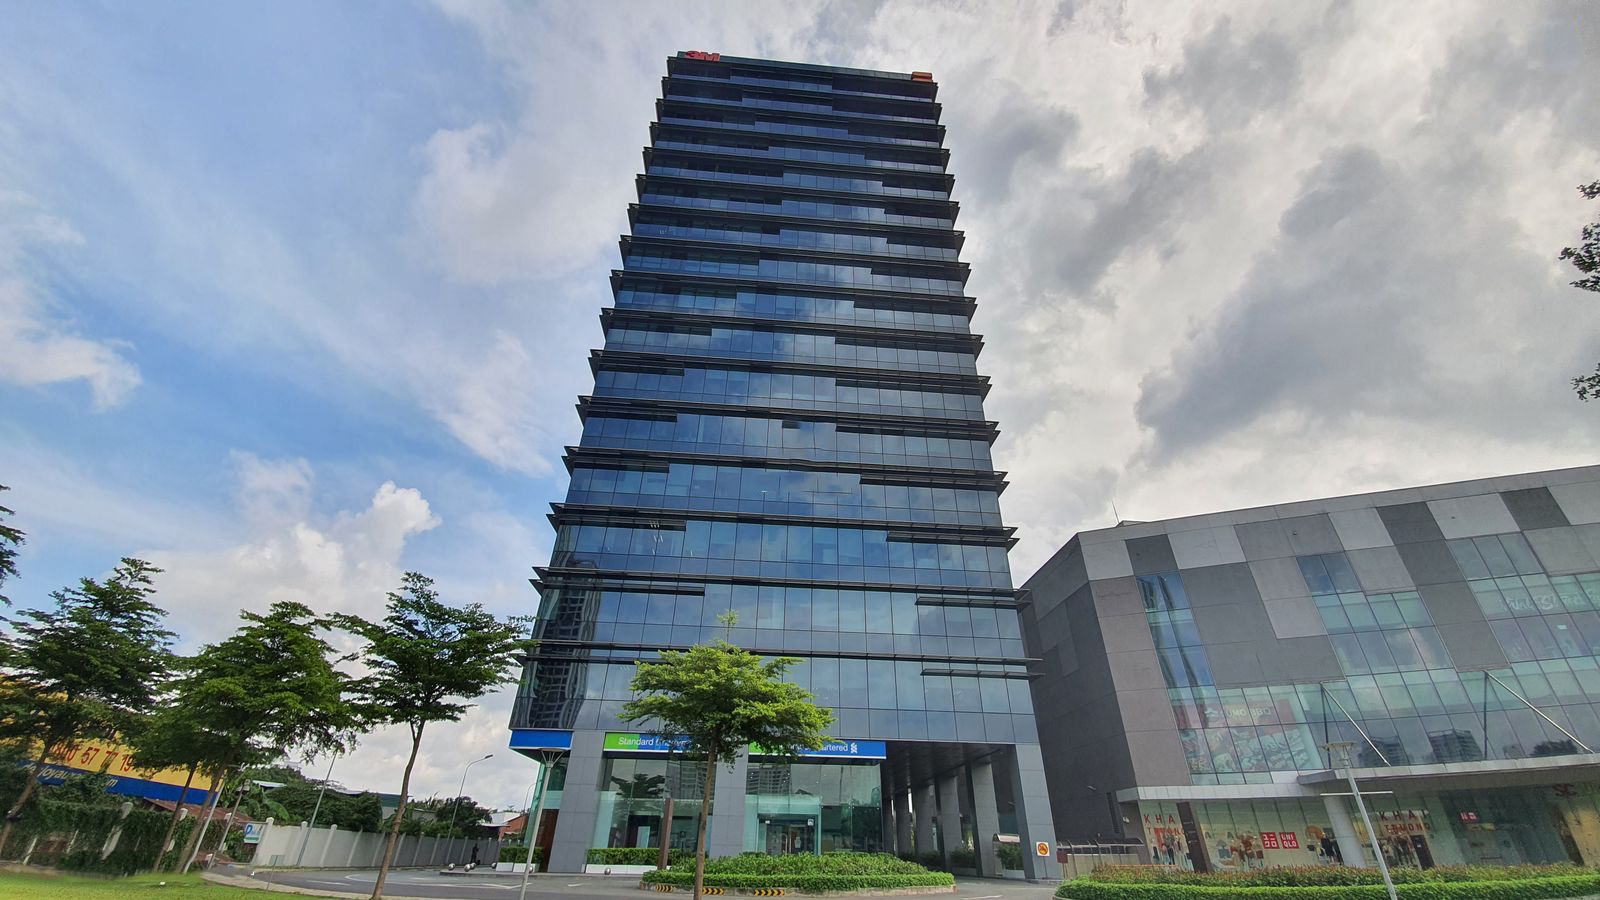 Bán building mặt tiền Hoàng Diệu, Q.Phú Nhuận, 465m2, 16 tầng, hdt 1ty8/tháng. Giá siêu tốt.